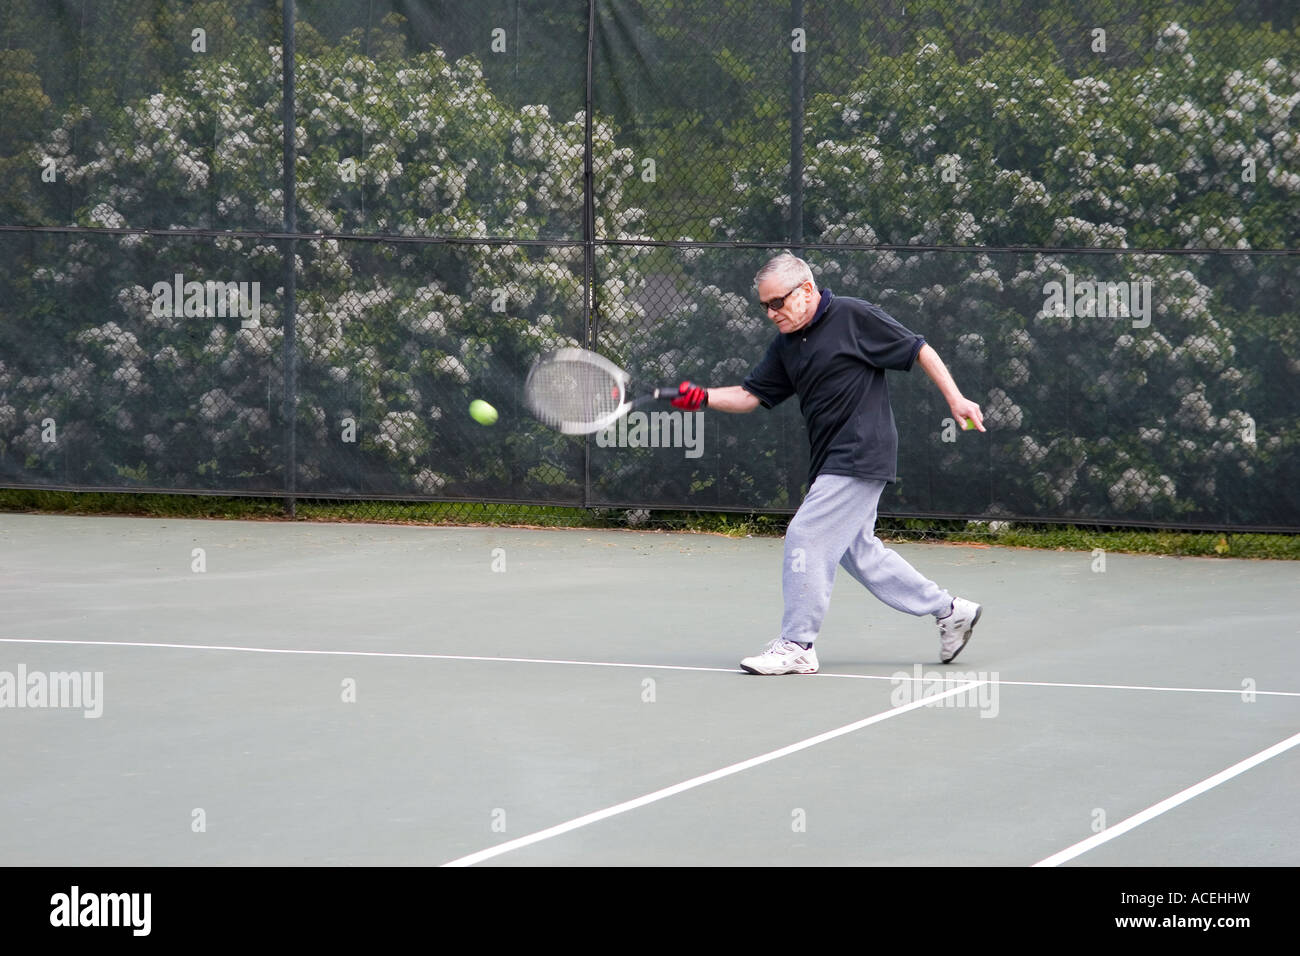 Personnes âgées retired man playing tennis frapper la balle de tennis avec une course de coup droit Banque D'Images